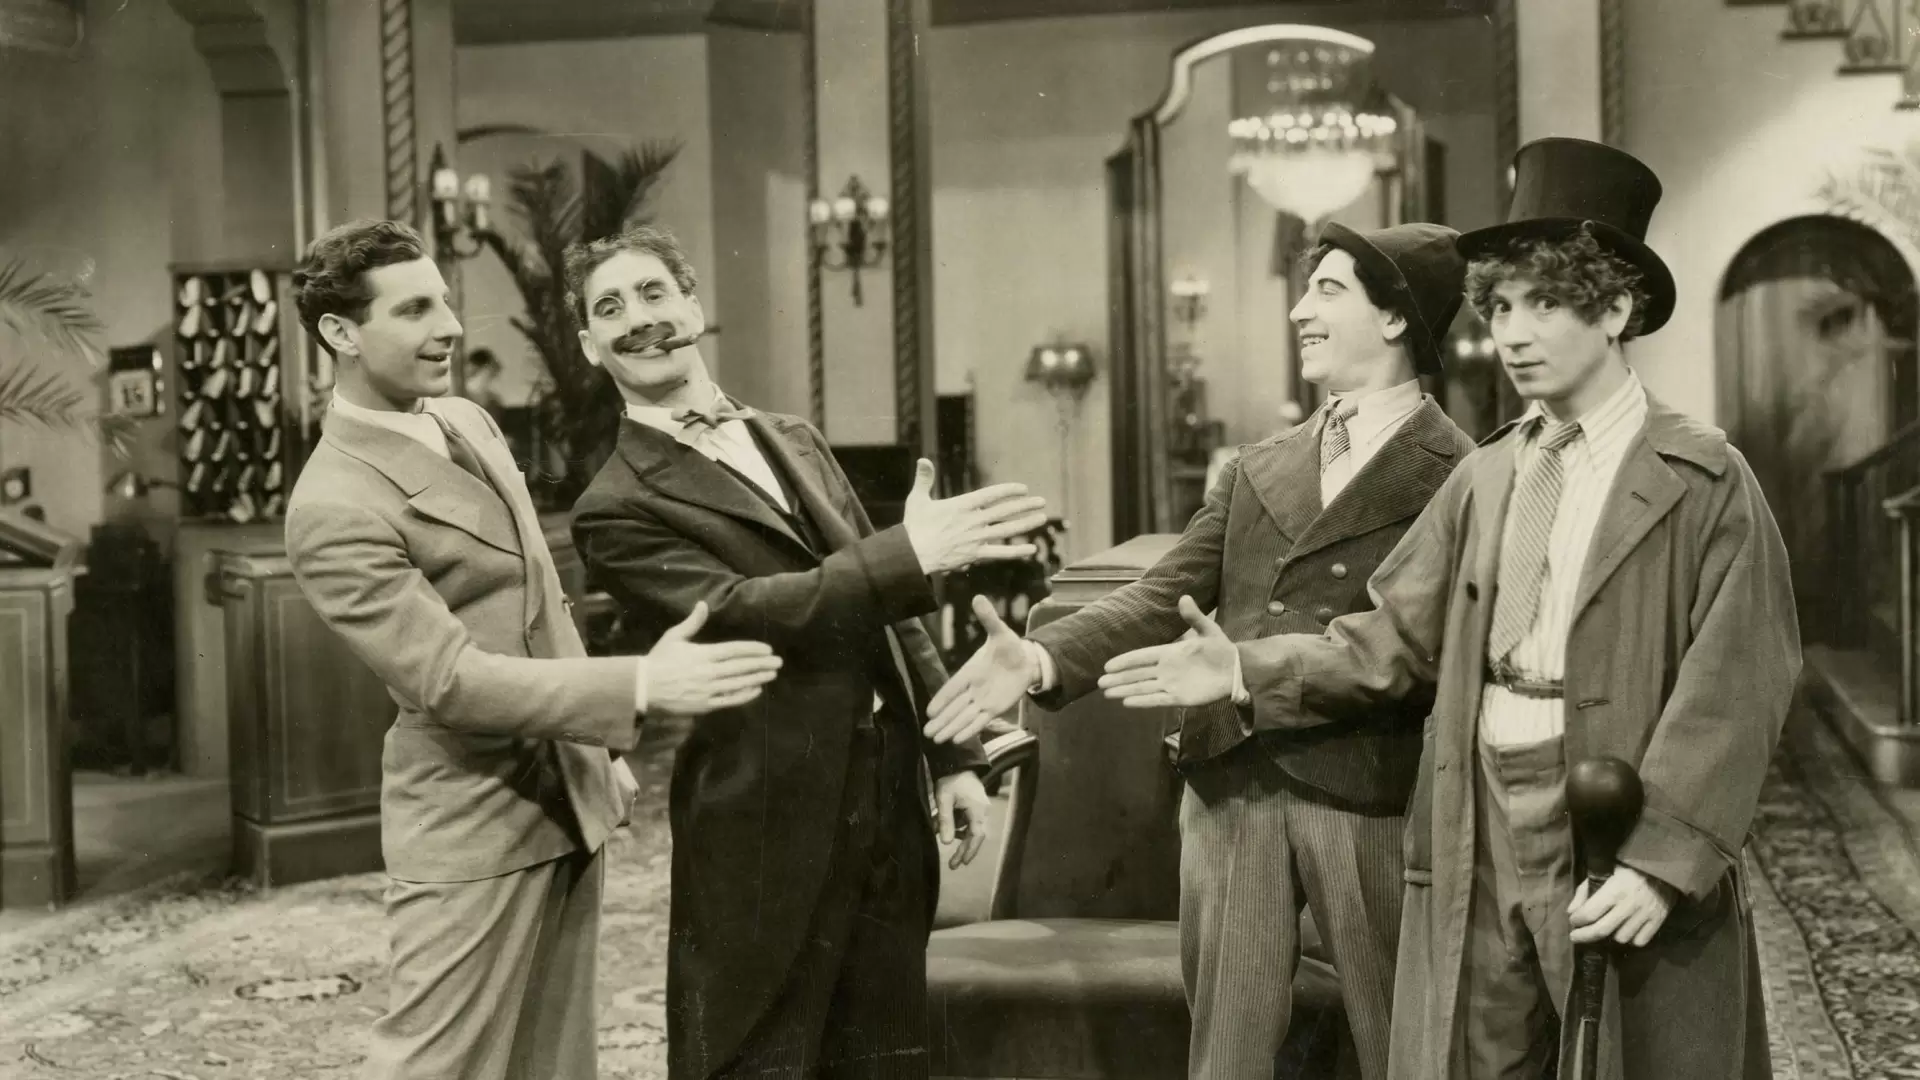 دانلود فیلم The Cocoanuts 1929 (نارگیل) با زیرنویس فارسی و تماشای آنلاین